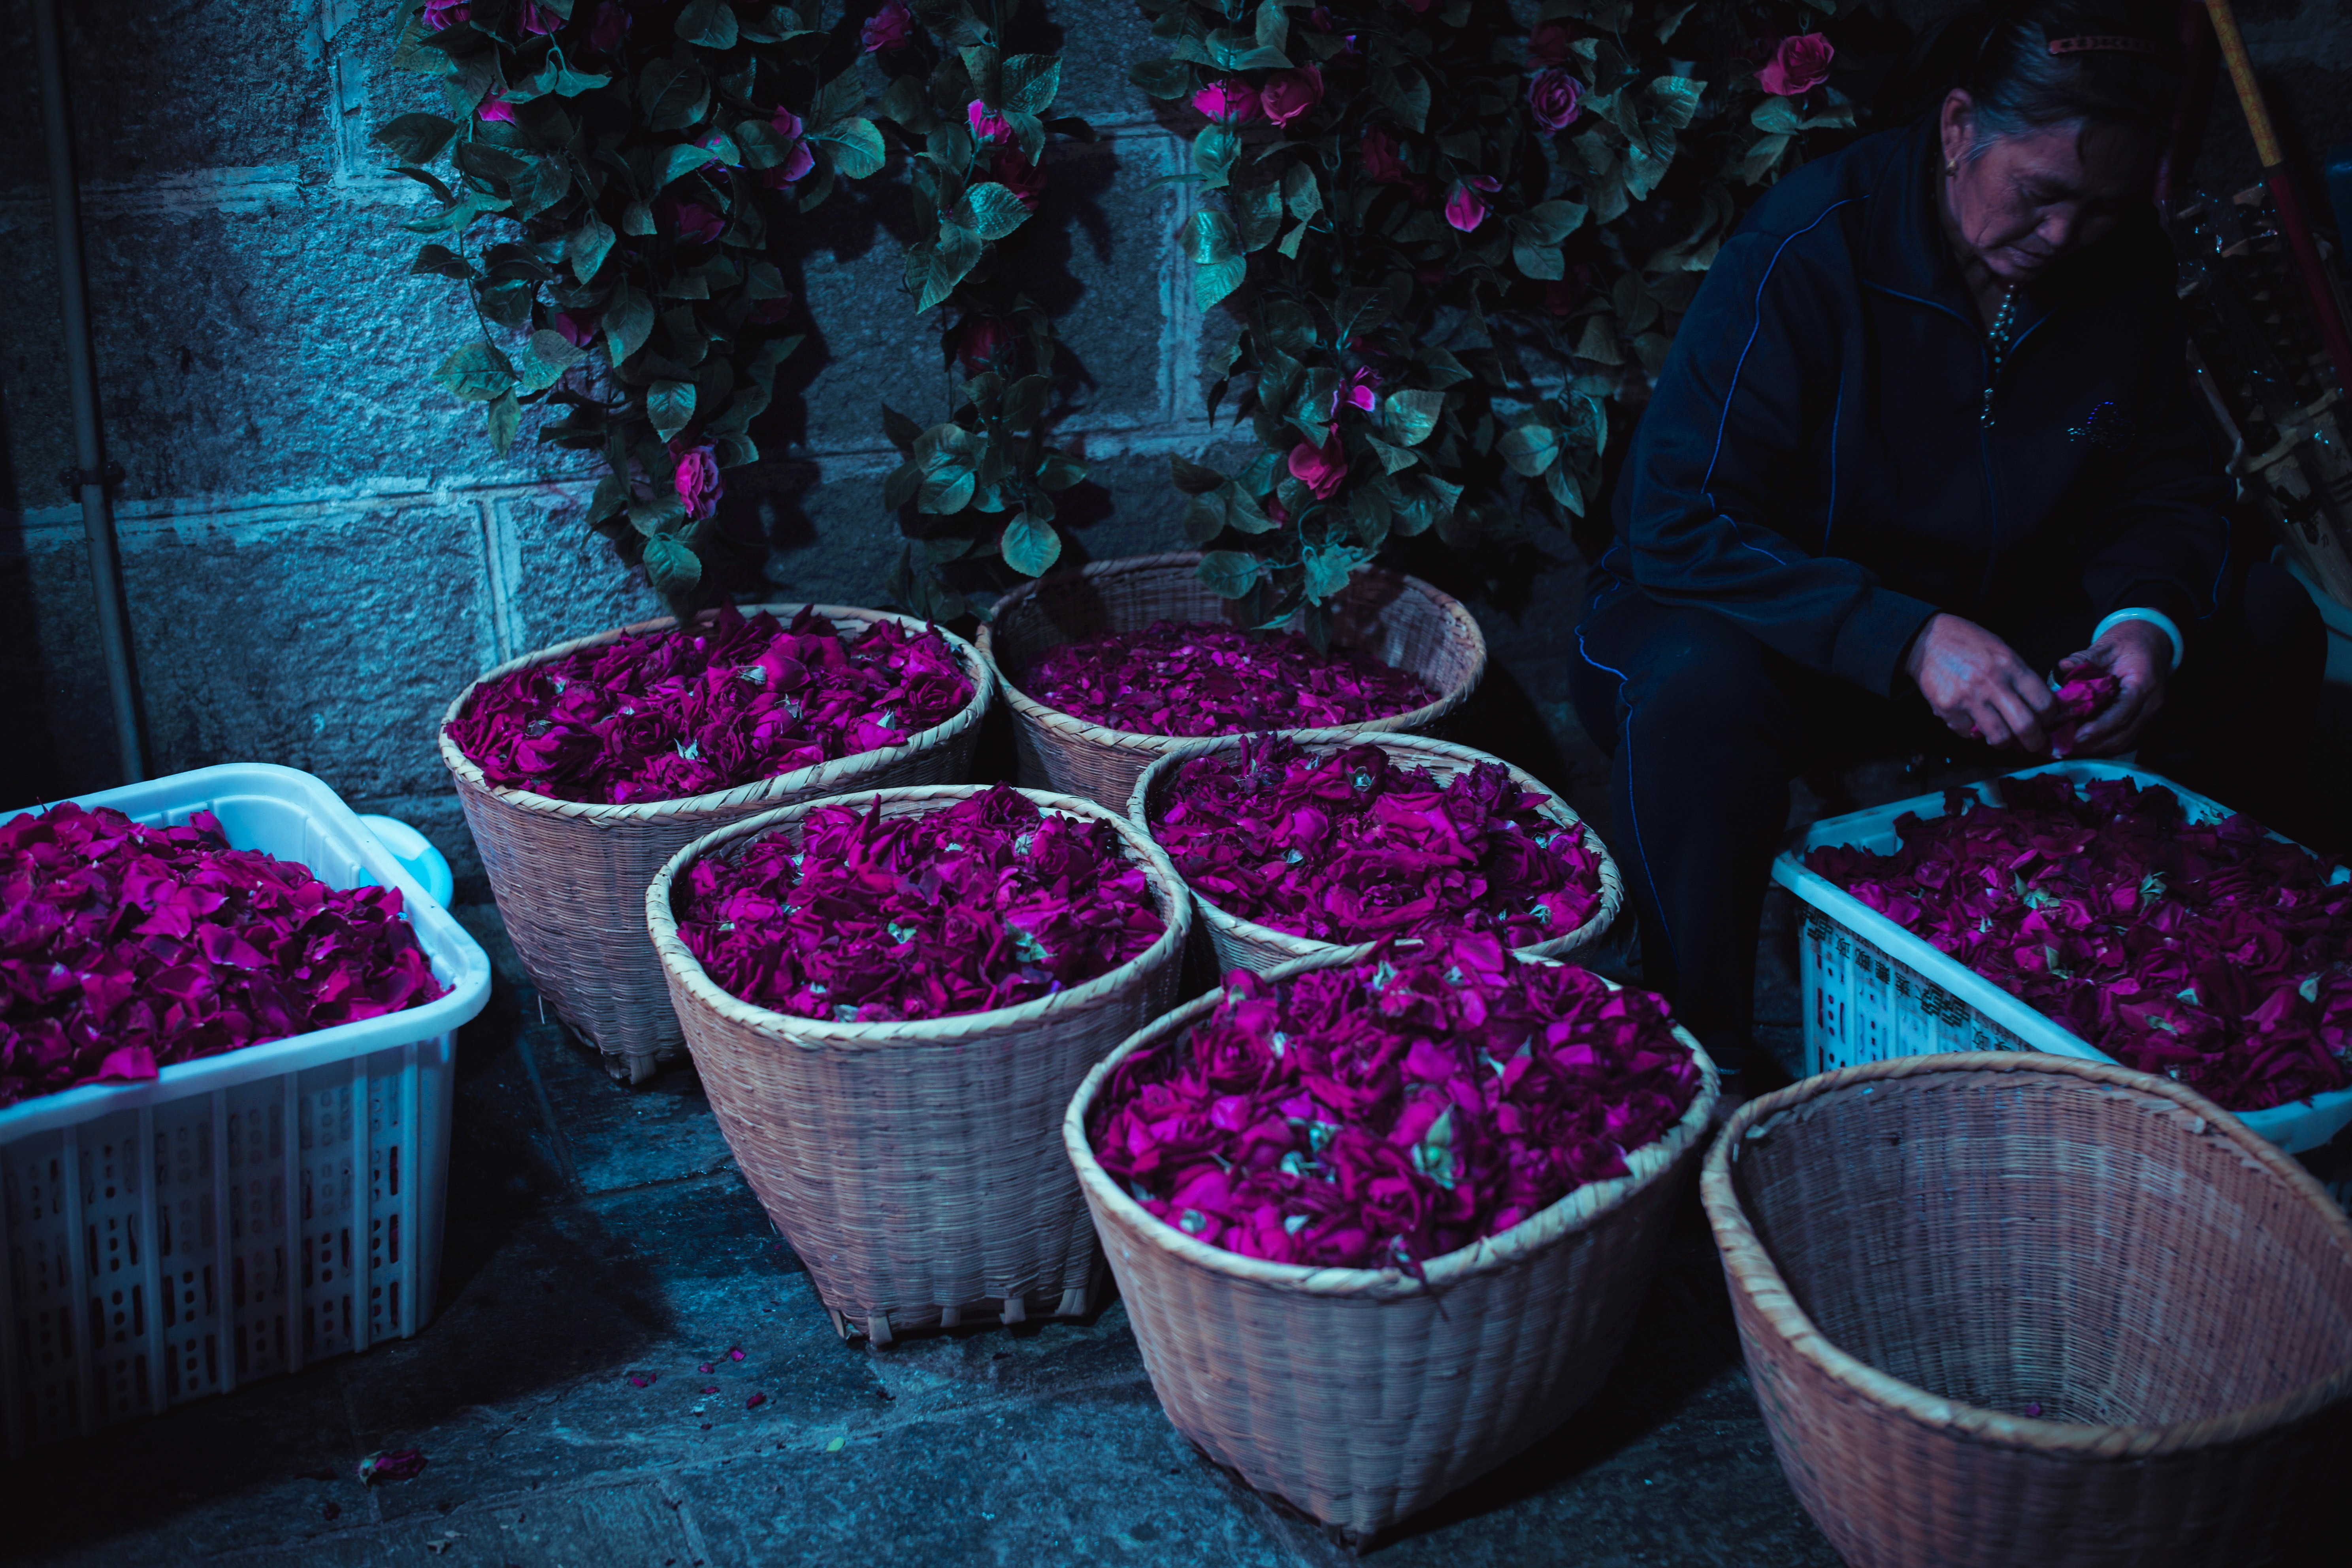 purple flowers in baskets